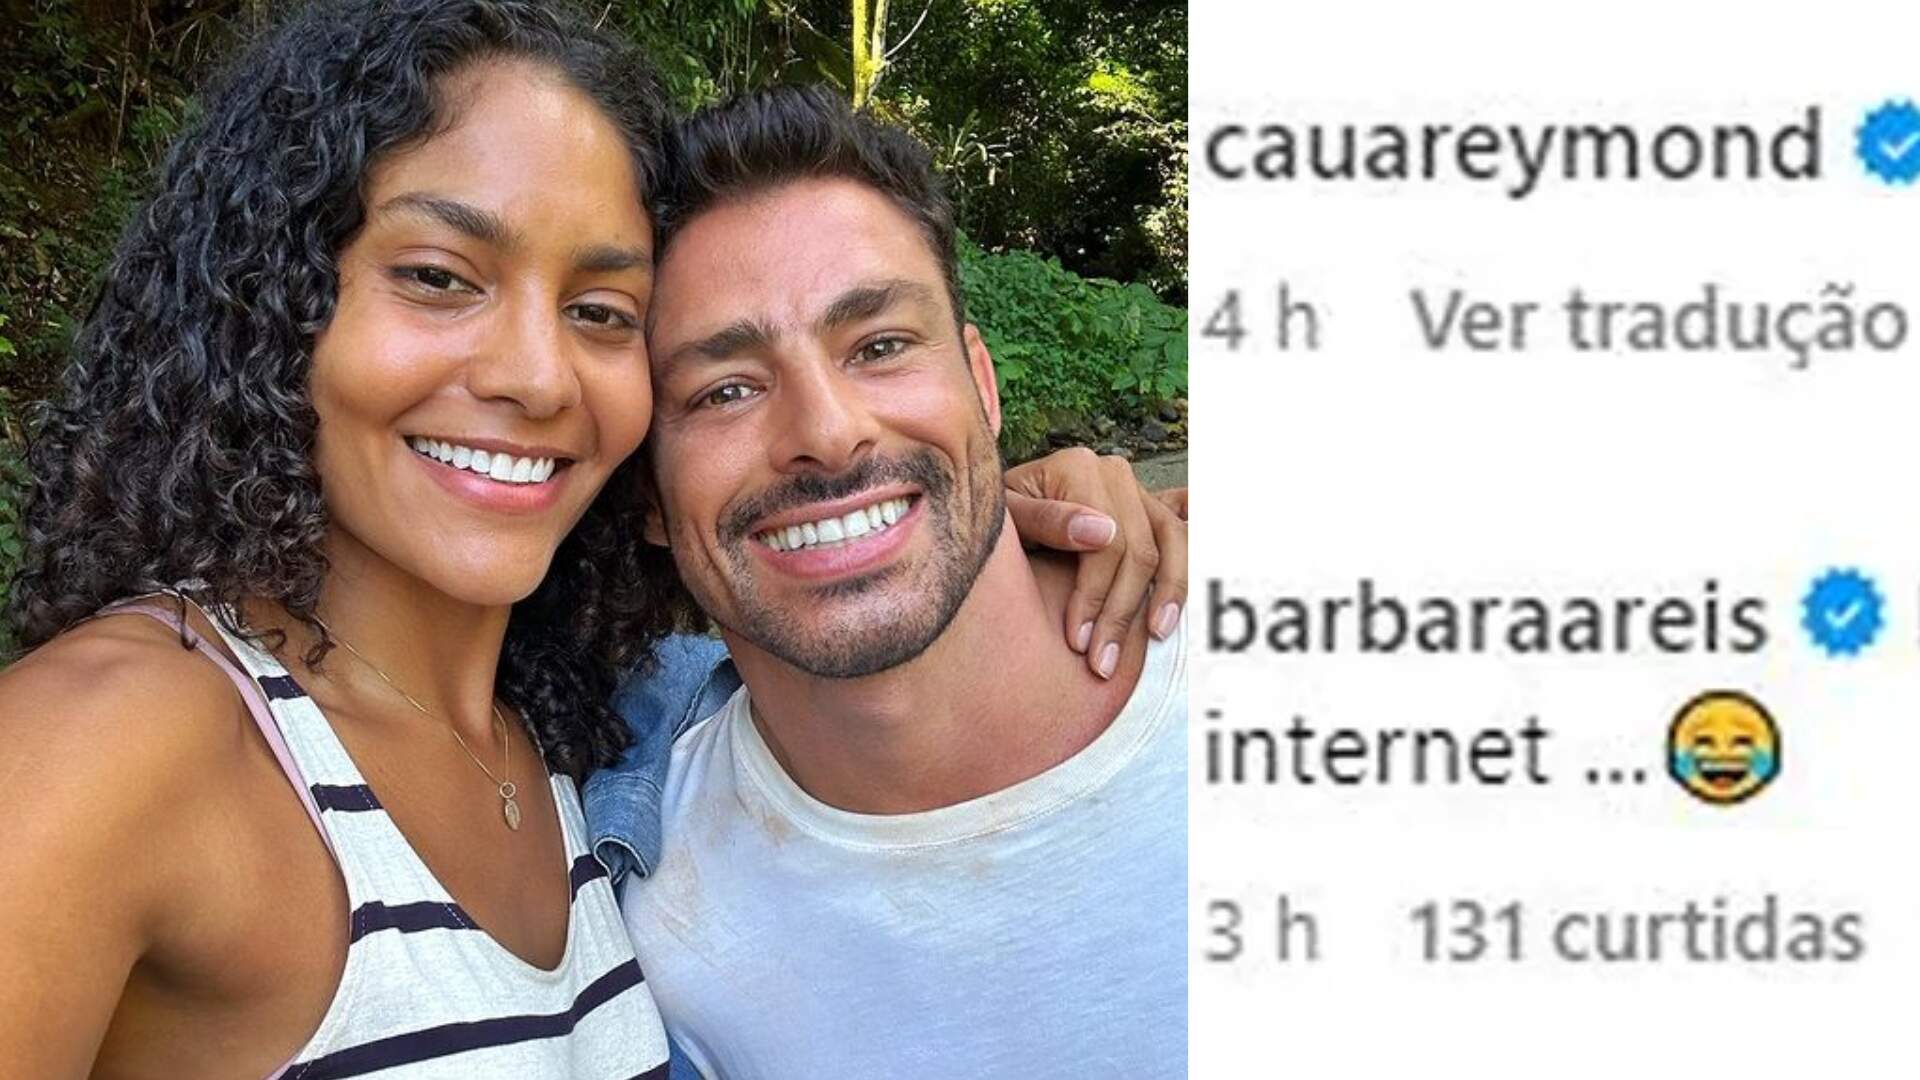 Protagonistas de ‘Terra e Paixão’, Cauã Reymond e Barbara Reis, trocam “farpas” nas redes sociais!